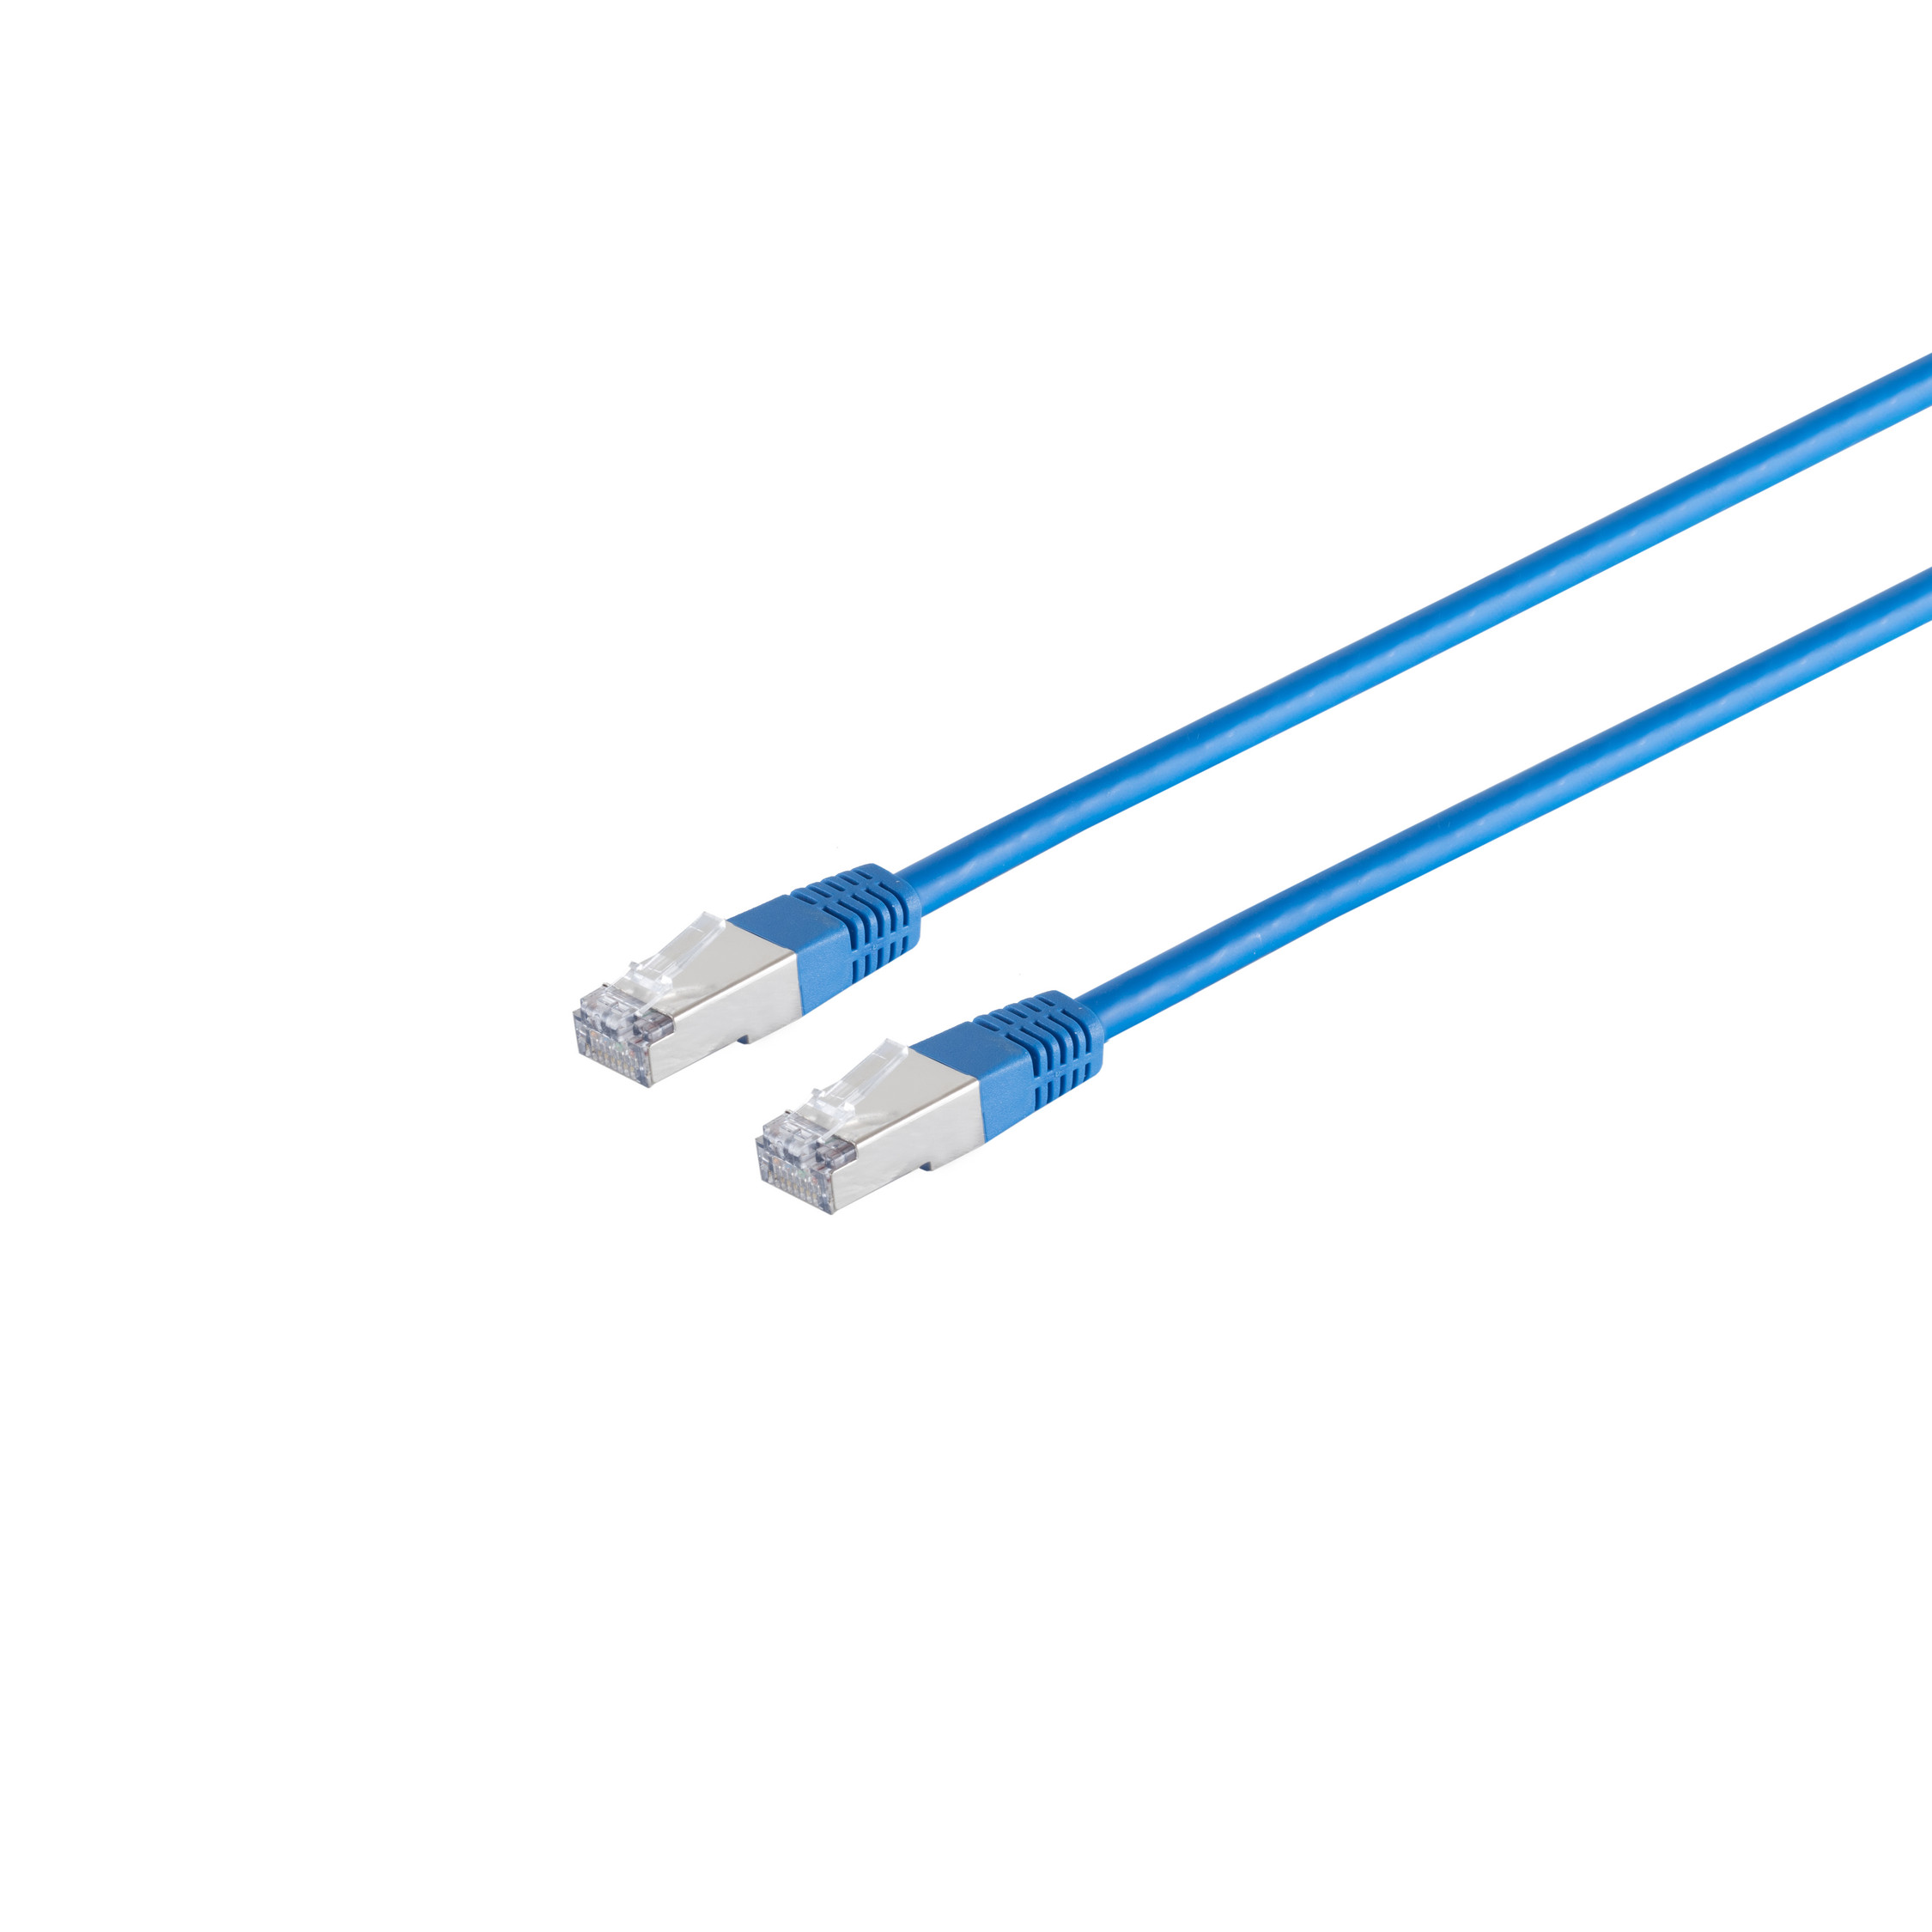 S/CONN MAXIMUM CONNECTIVITY RJ45, m Halogenfrei S/FTP Patchkabel blau cat PIMF 2m, 2 6 Patchkabel